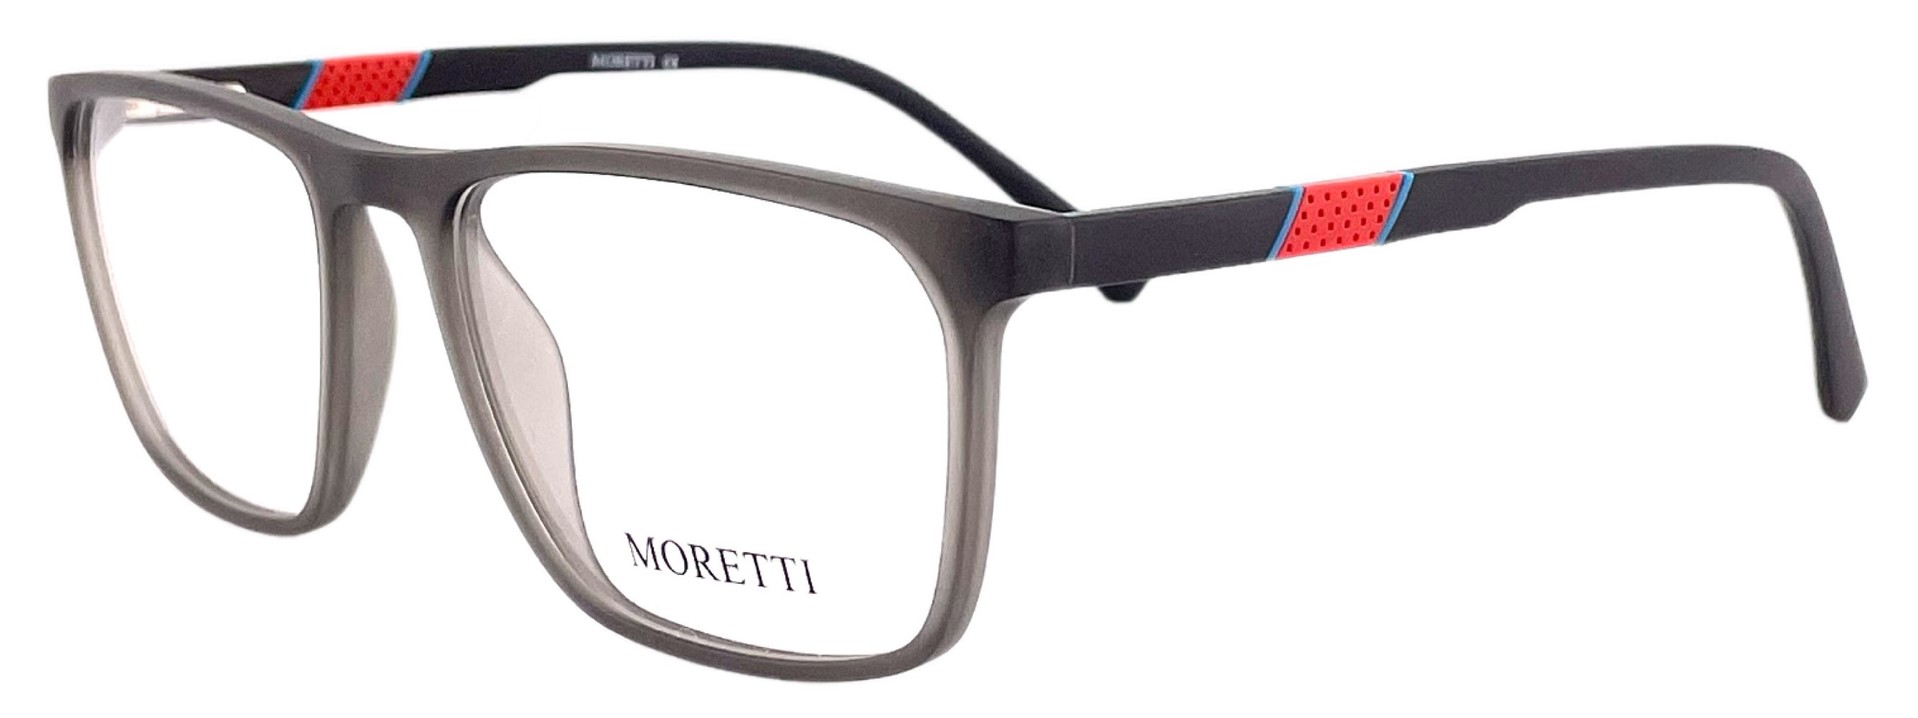 Moretti MF01-01 C.02 2